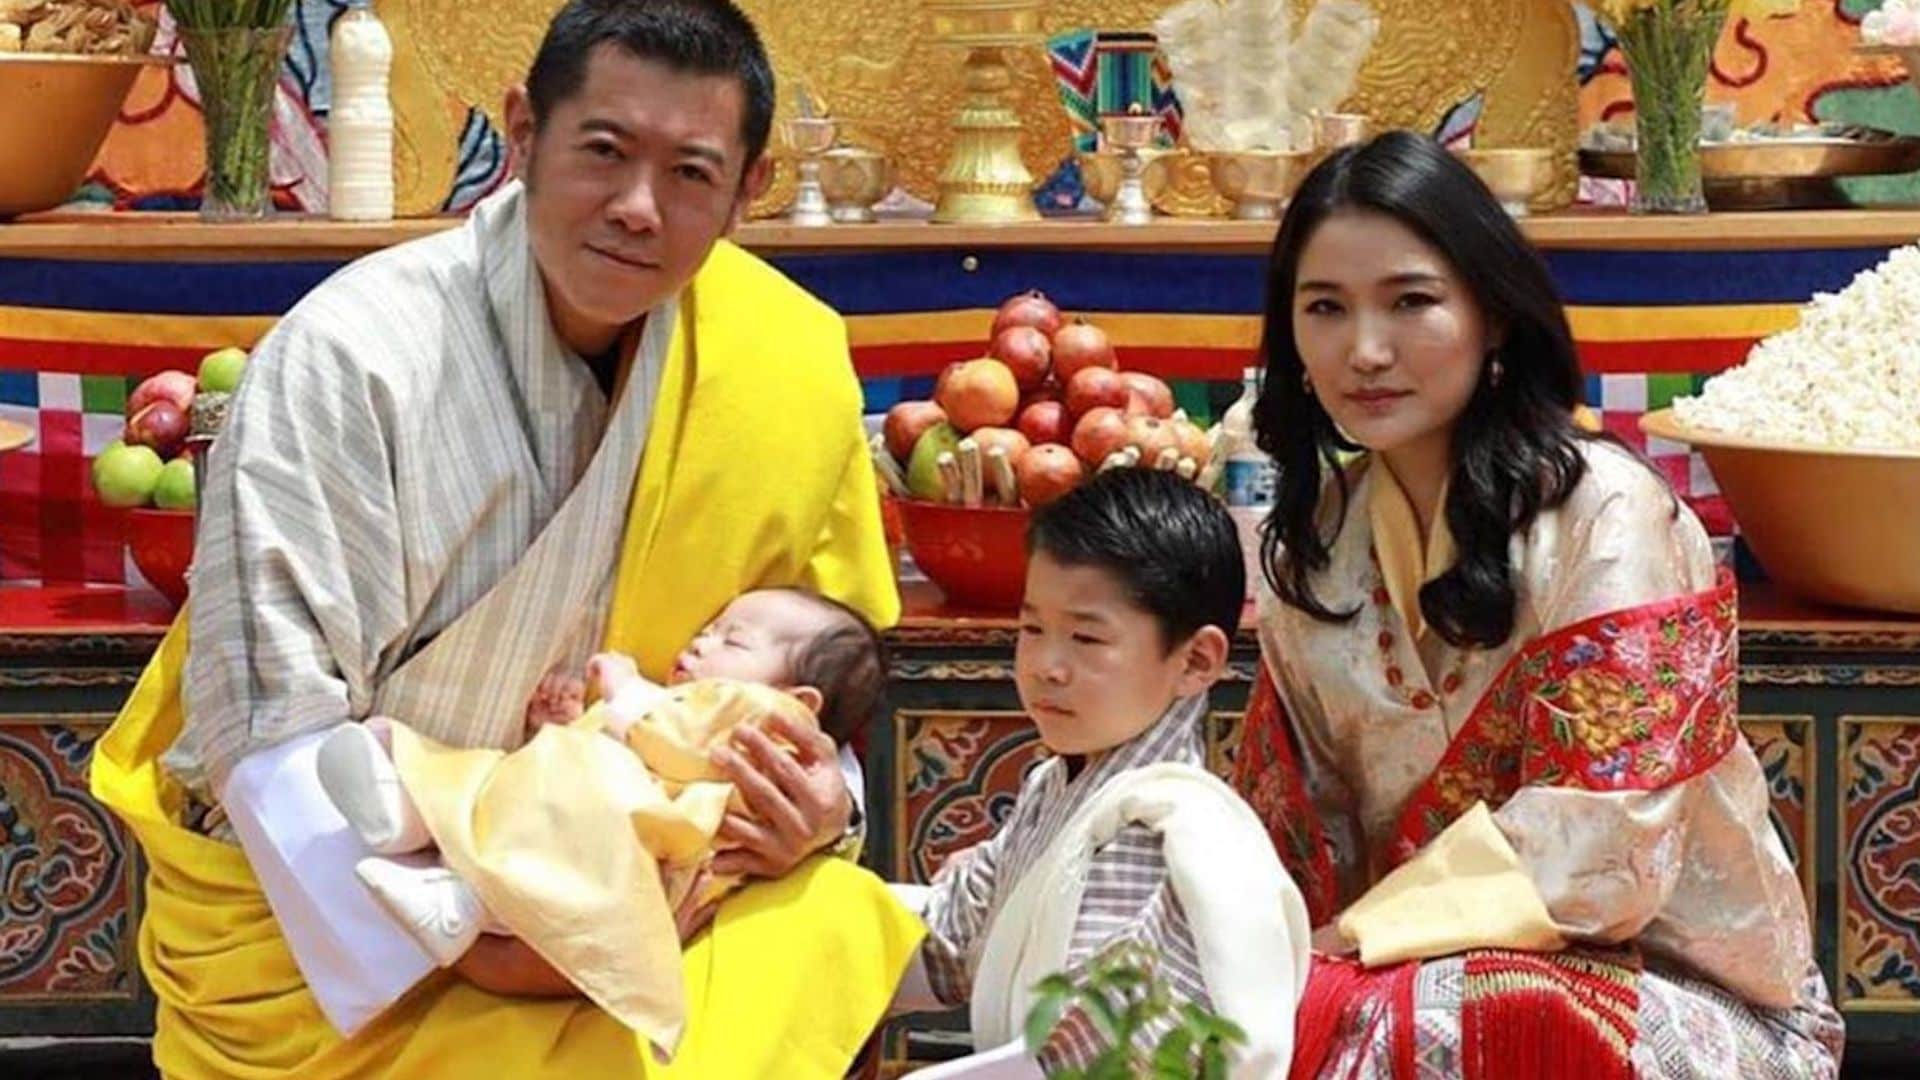 Los Reyes de Bután dan a conocer finalmente el nombre de su segundo hijo